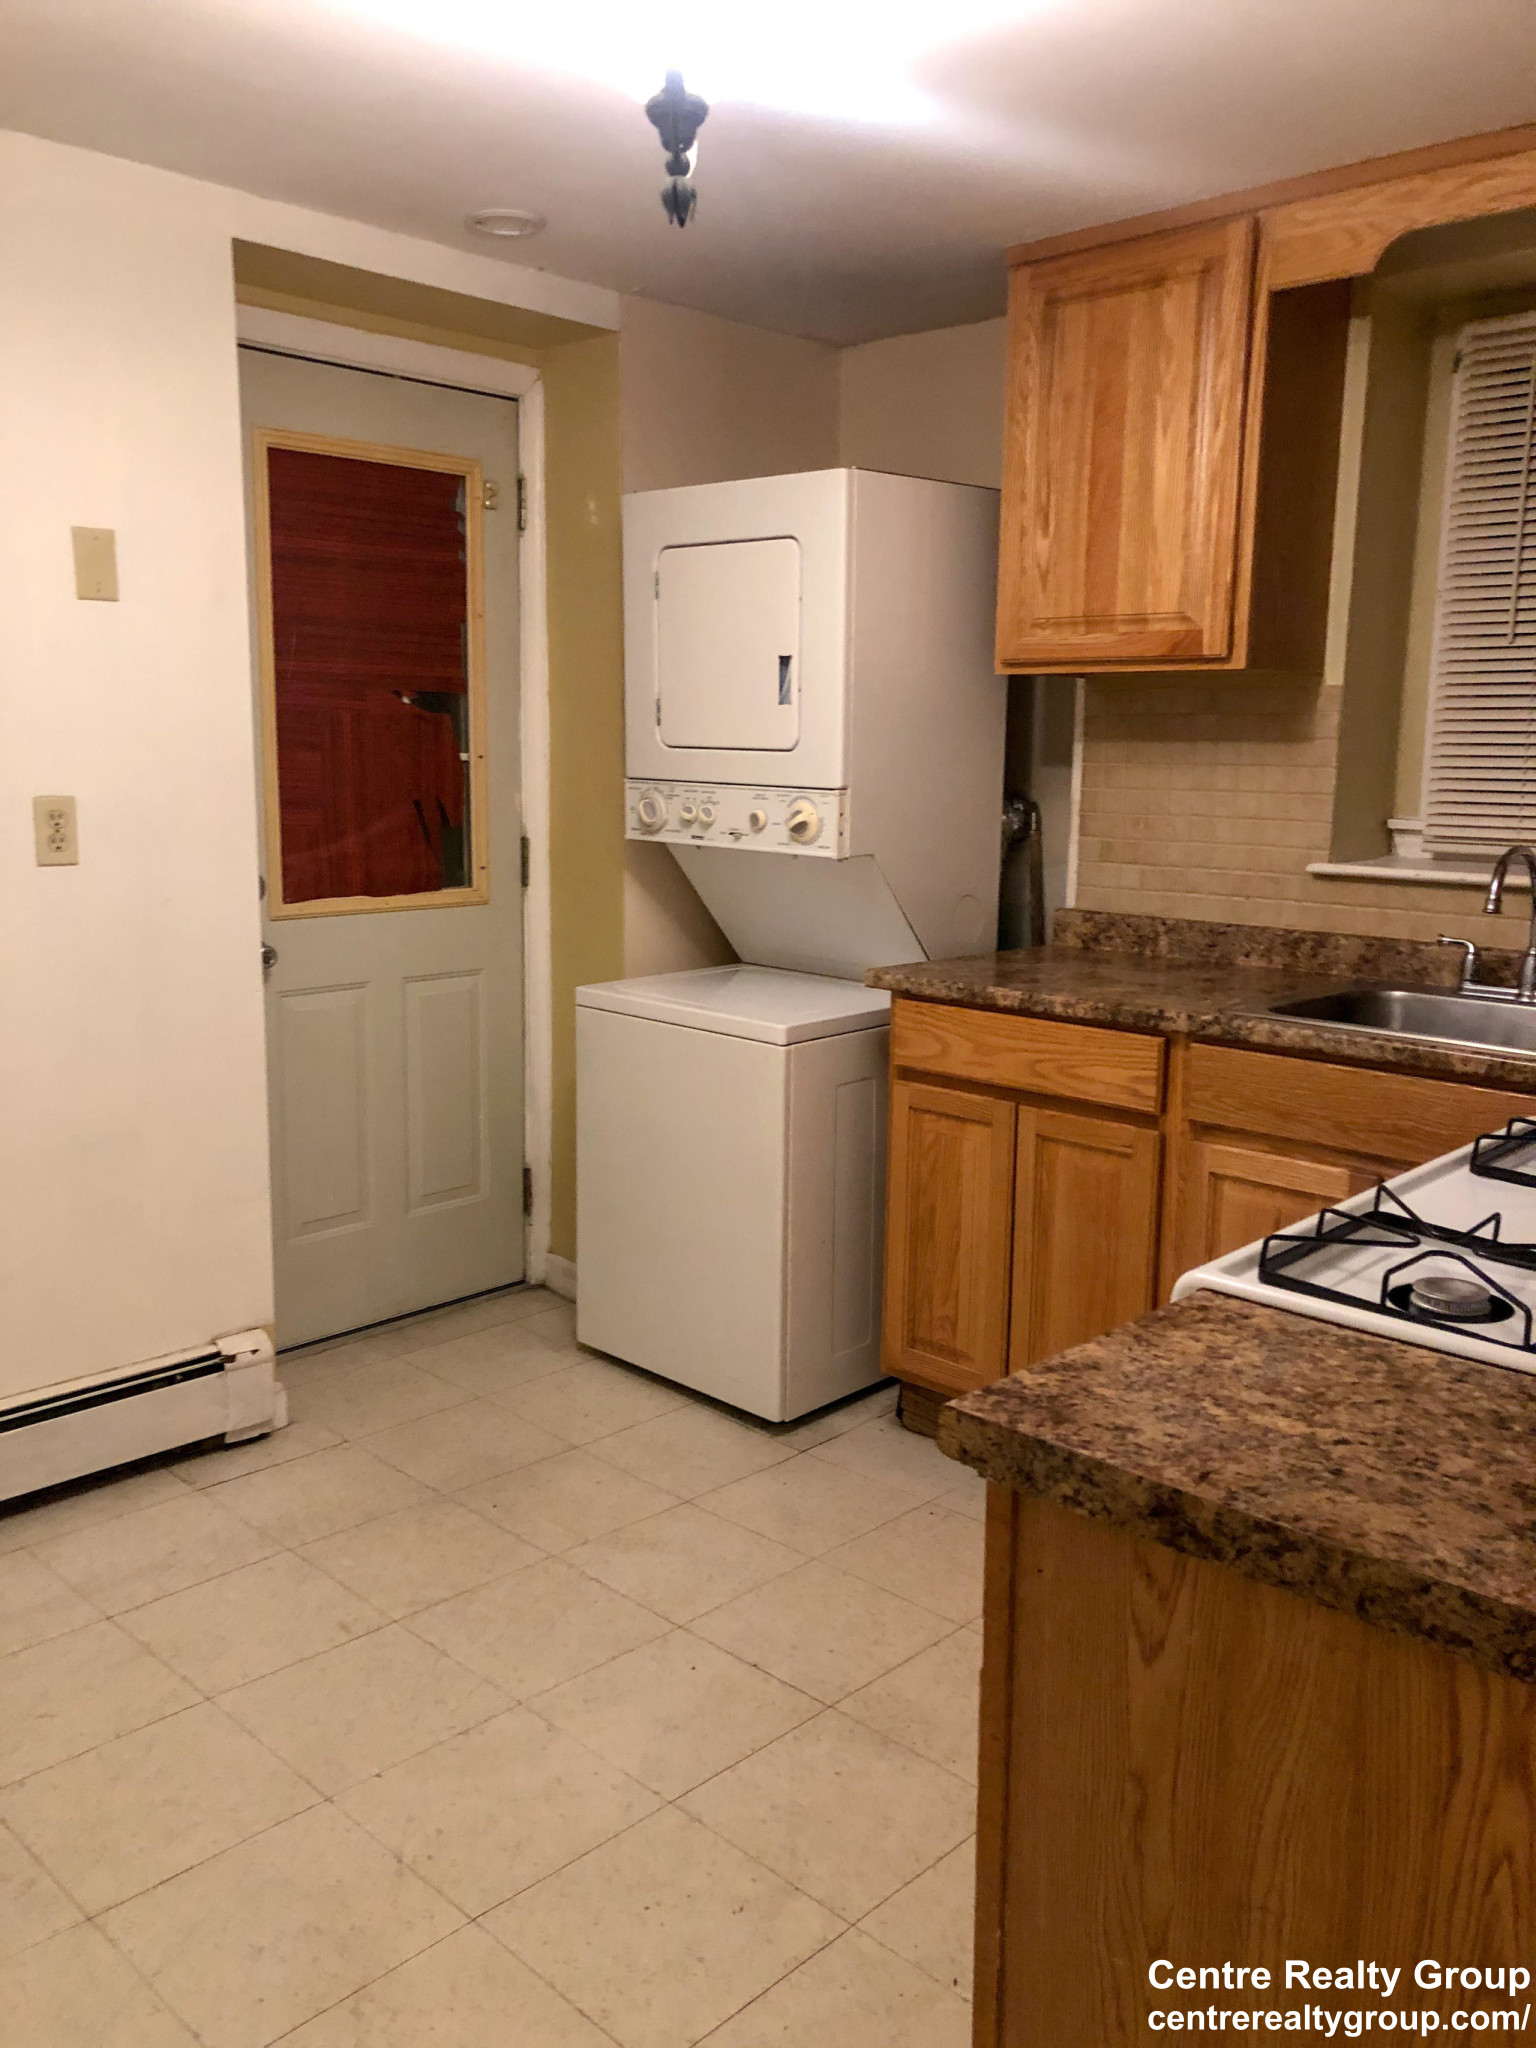 Photos of apartment on Washington,Boston MA 02132